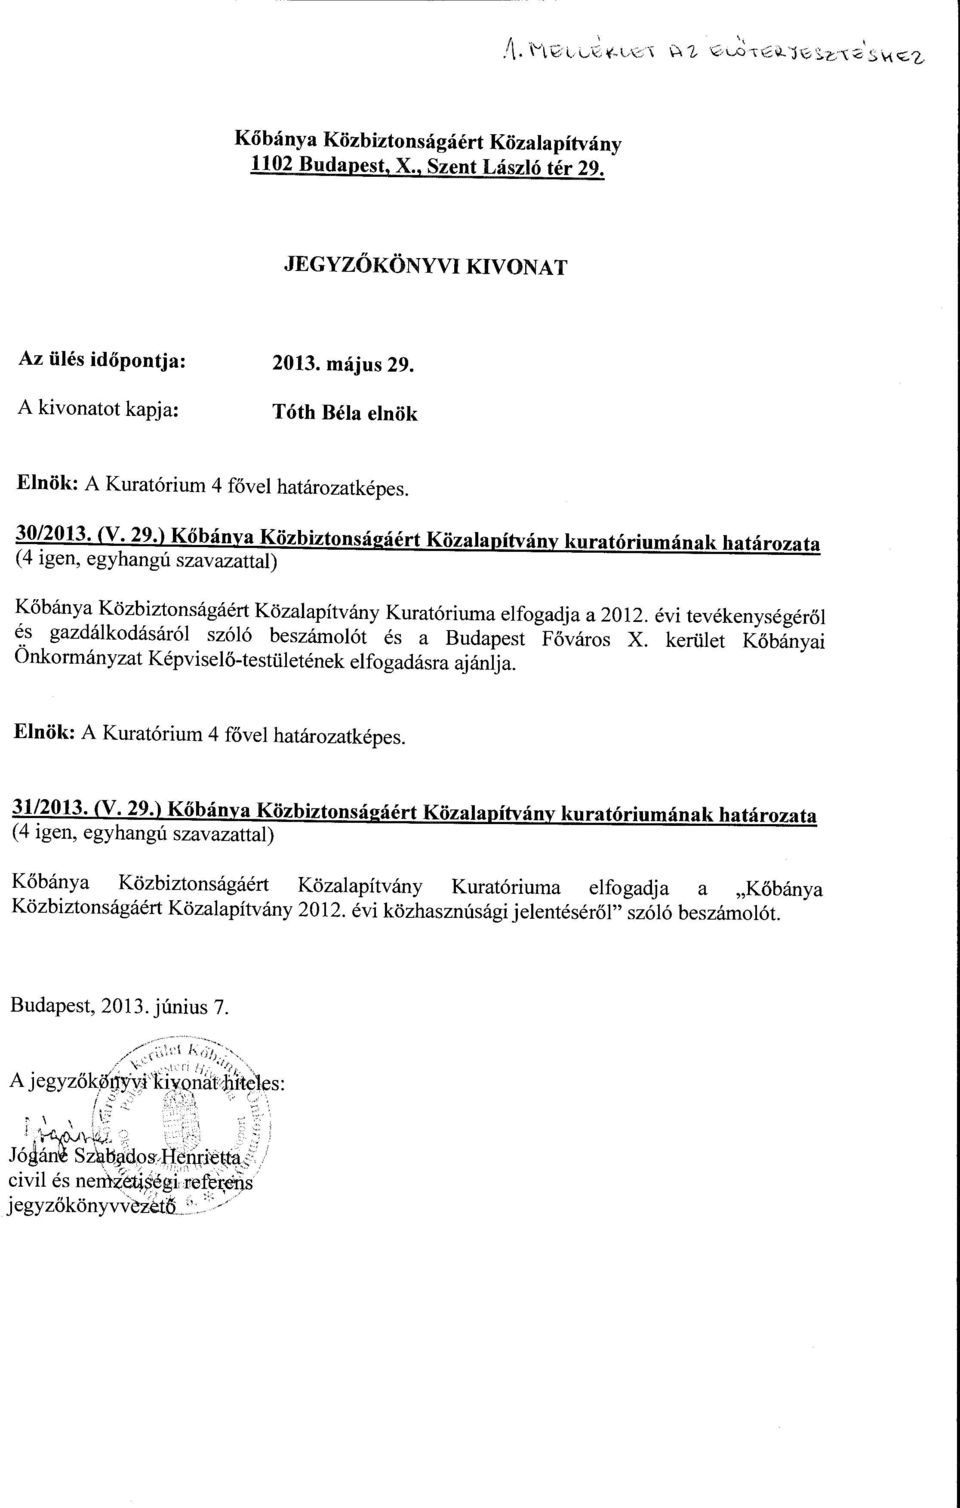 A kivanatt kapja: Tóth Béla elnök Elnök: A Kuratórium 4 fővel határzatképes. 30/2013. (V. 29.